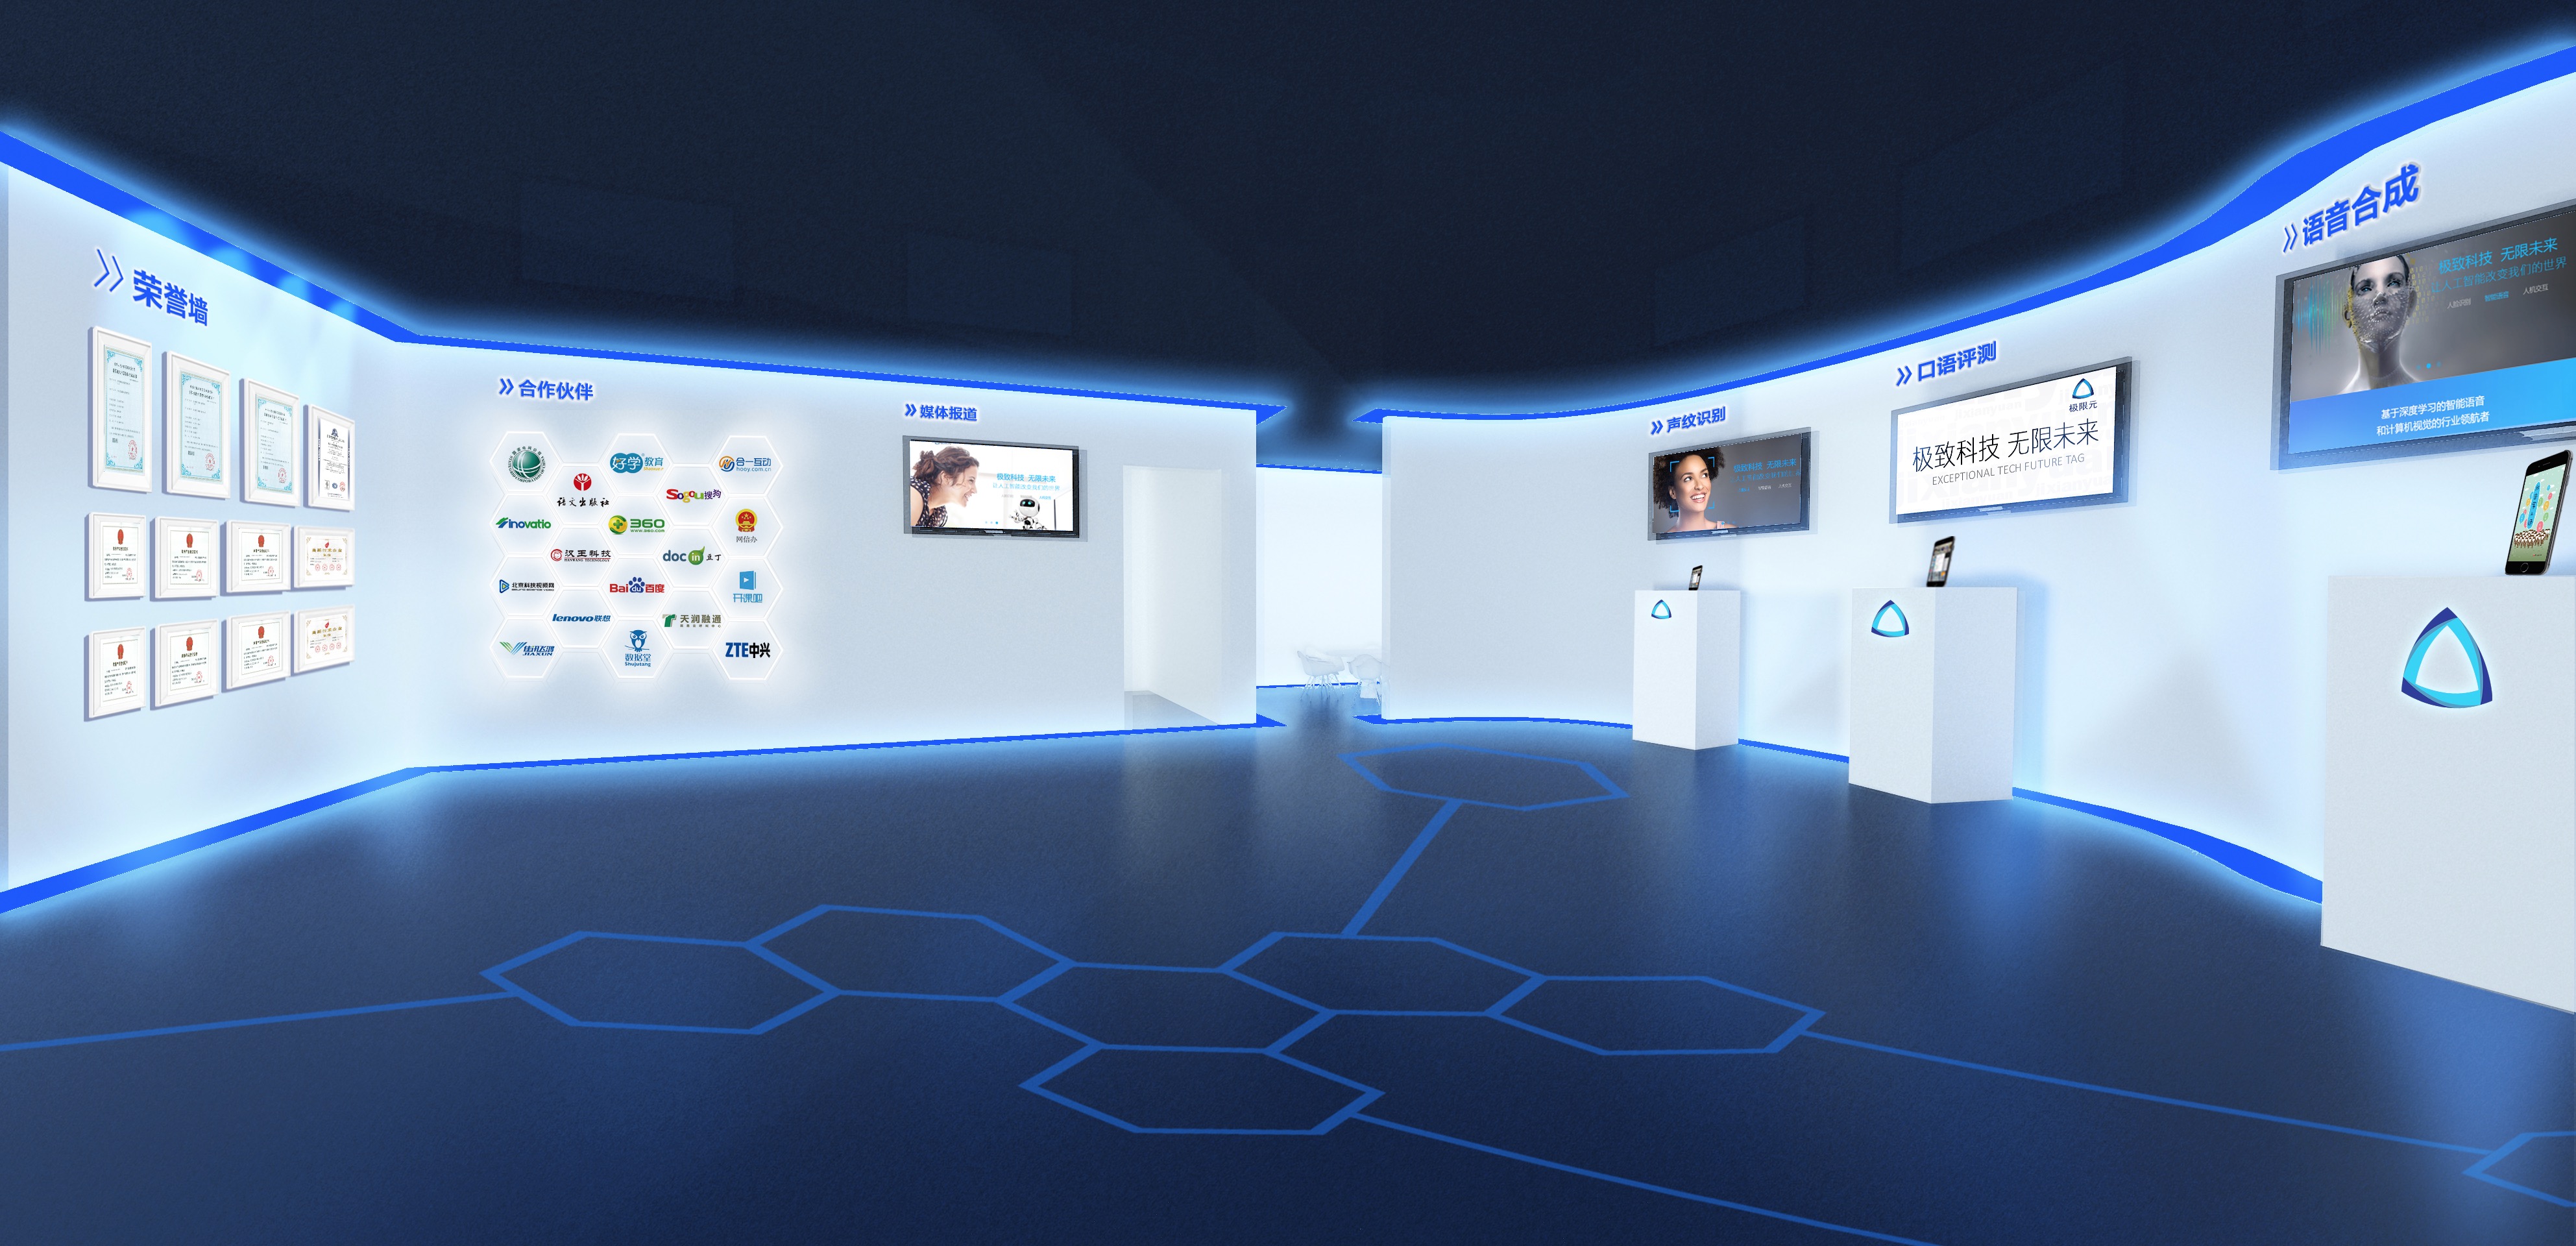 这是一张现代化的虚拟展览厅图片，内部以蓝色调为主，展示了多个屏幕和信息板，地面带有未来感的图案设计。